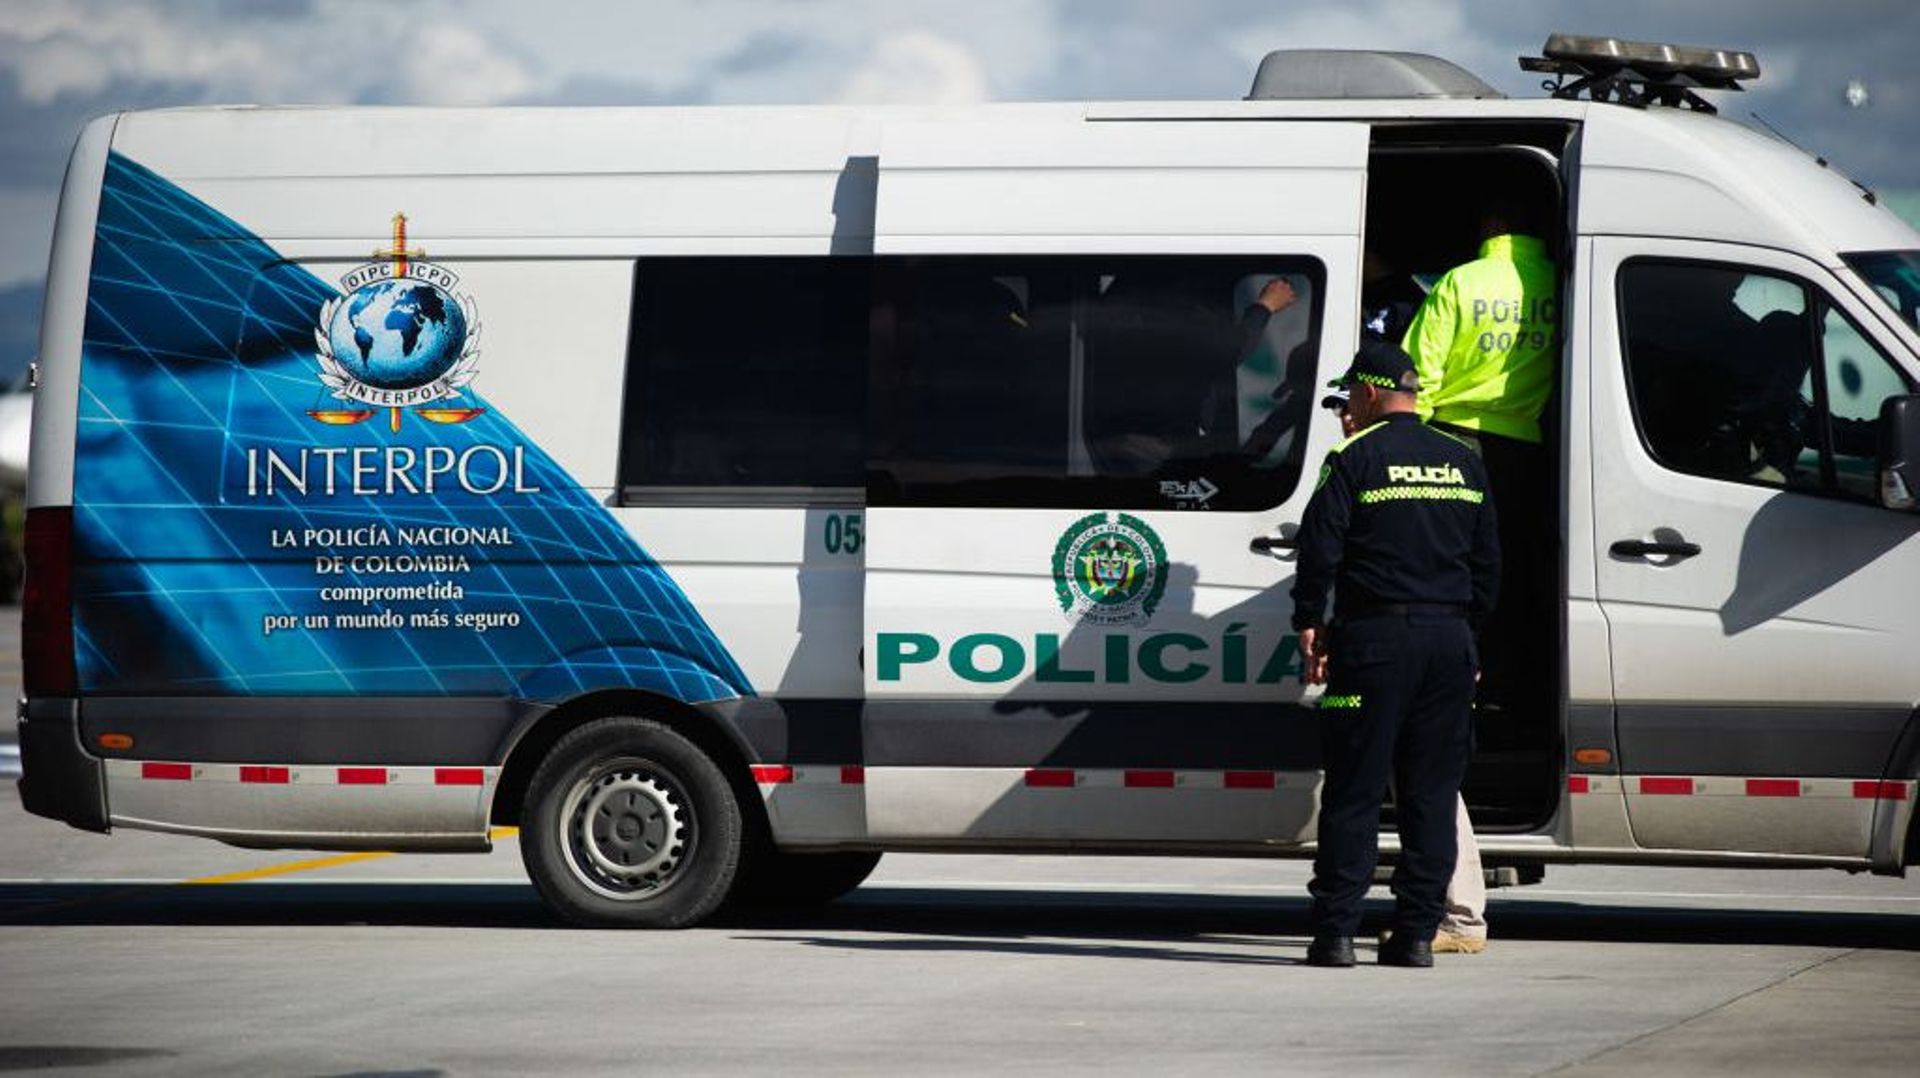 Près de 270 personnes, impliquées dans le trafic d’êtres humains et de migrants, ont été arrêtées et écrouées après une opération de police ciblant des réseaux criminels spécialisés en Amérique latine et dans les Caraïbes, a annoncé mercredi Interpol.